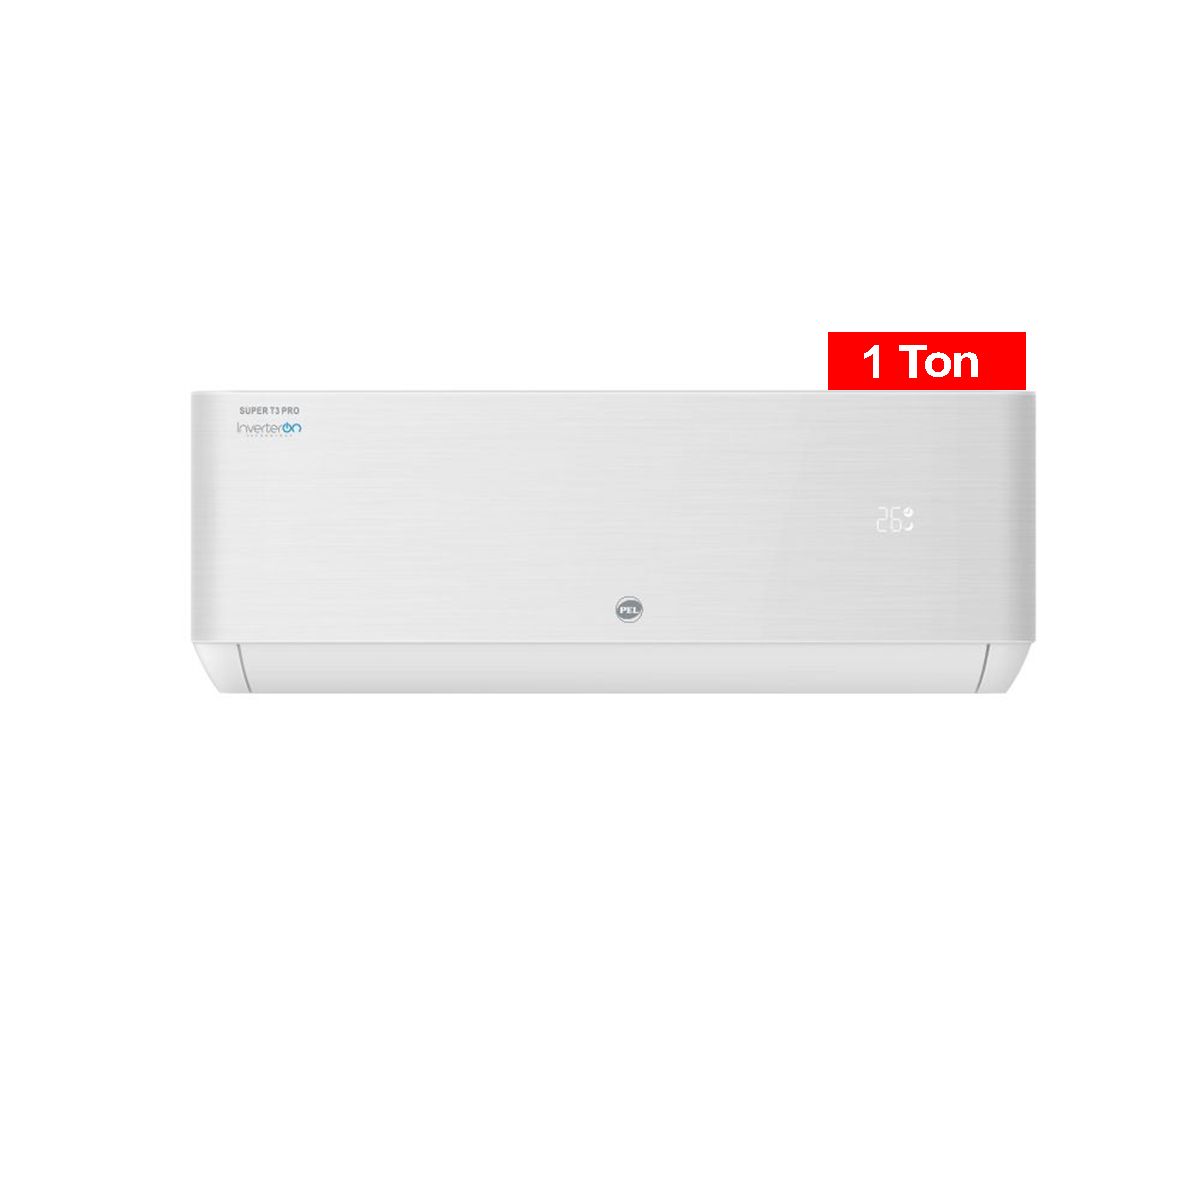 pel-inverter-air conditioner-1ton-super-pro